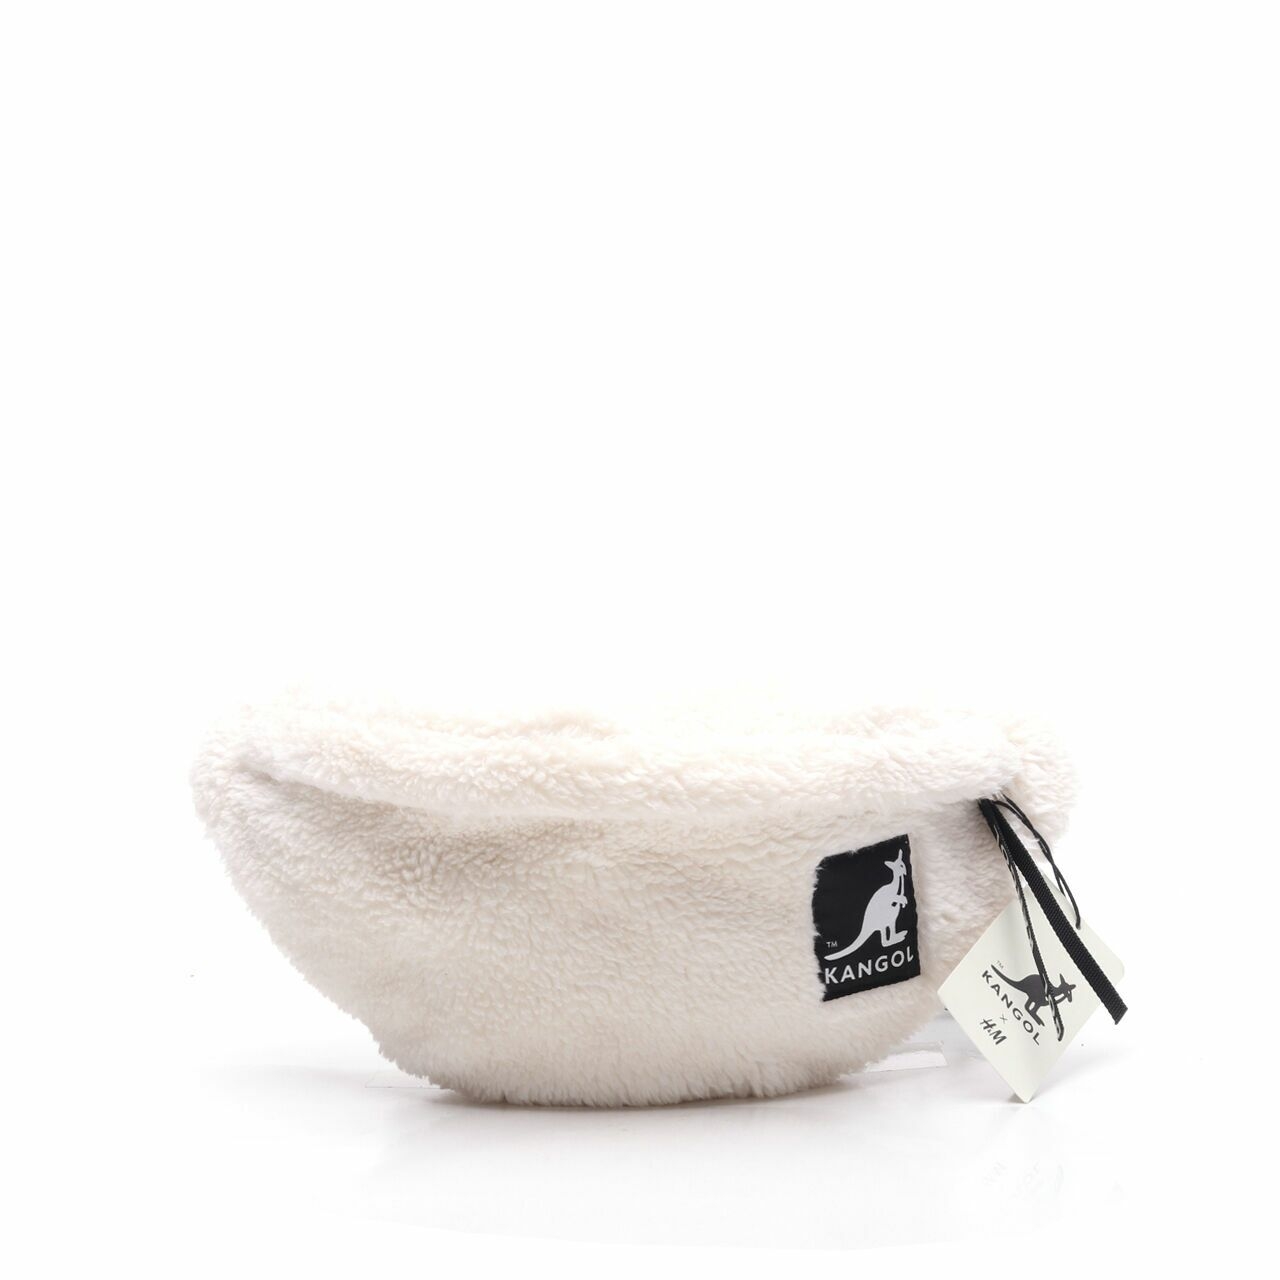 Kangol x H&M White Faux Fur Sling Bag	